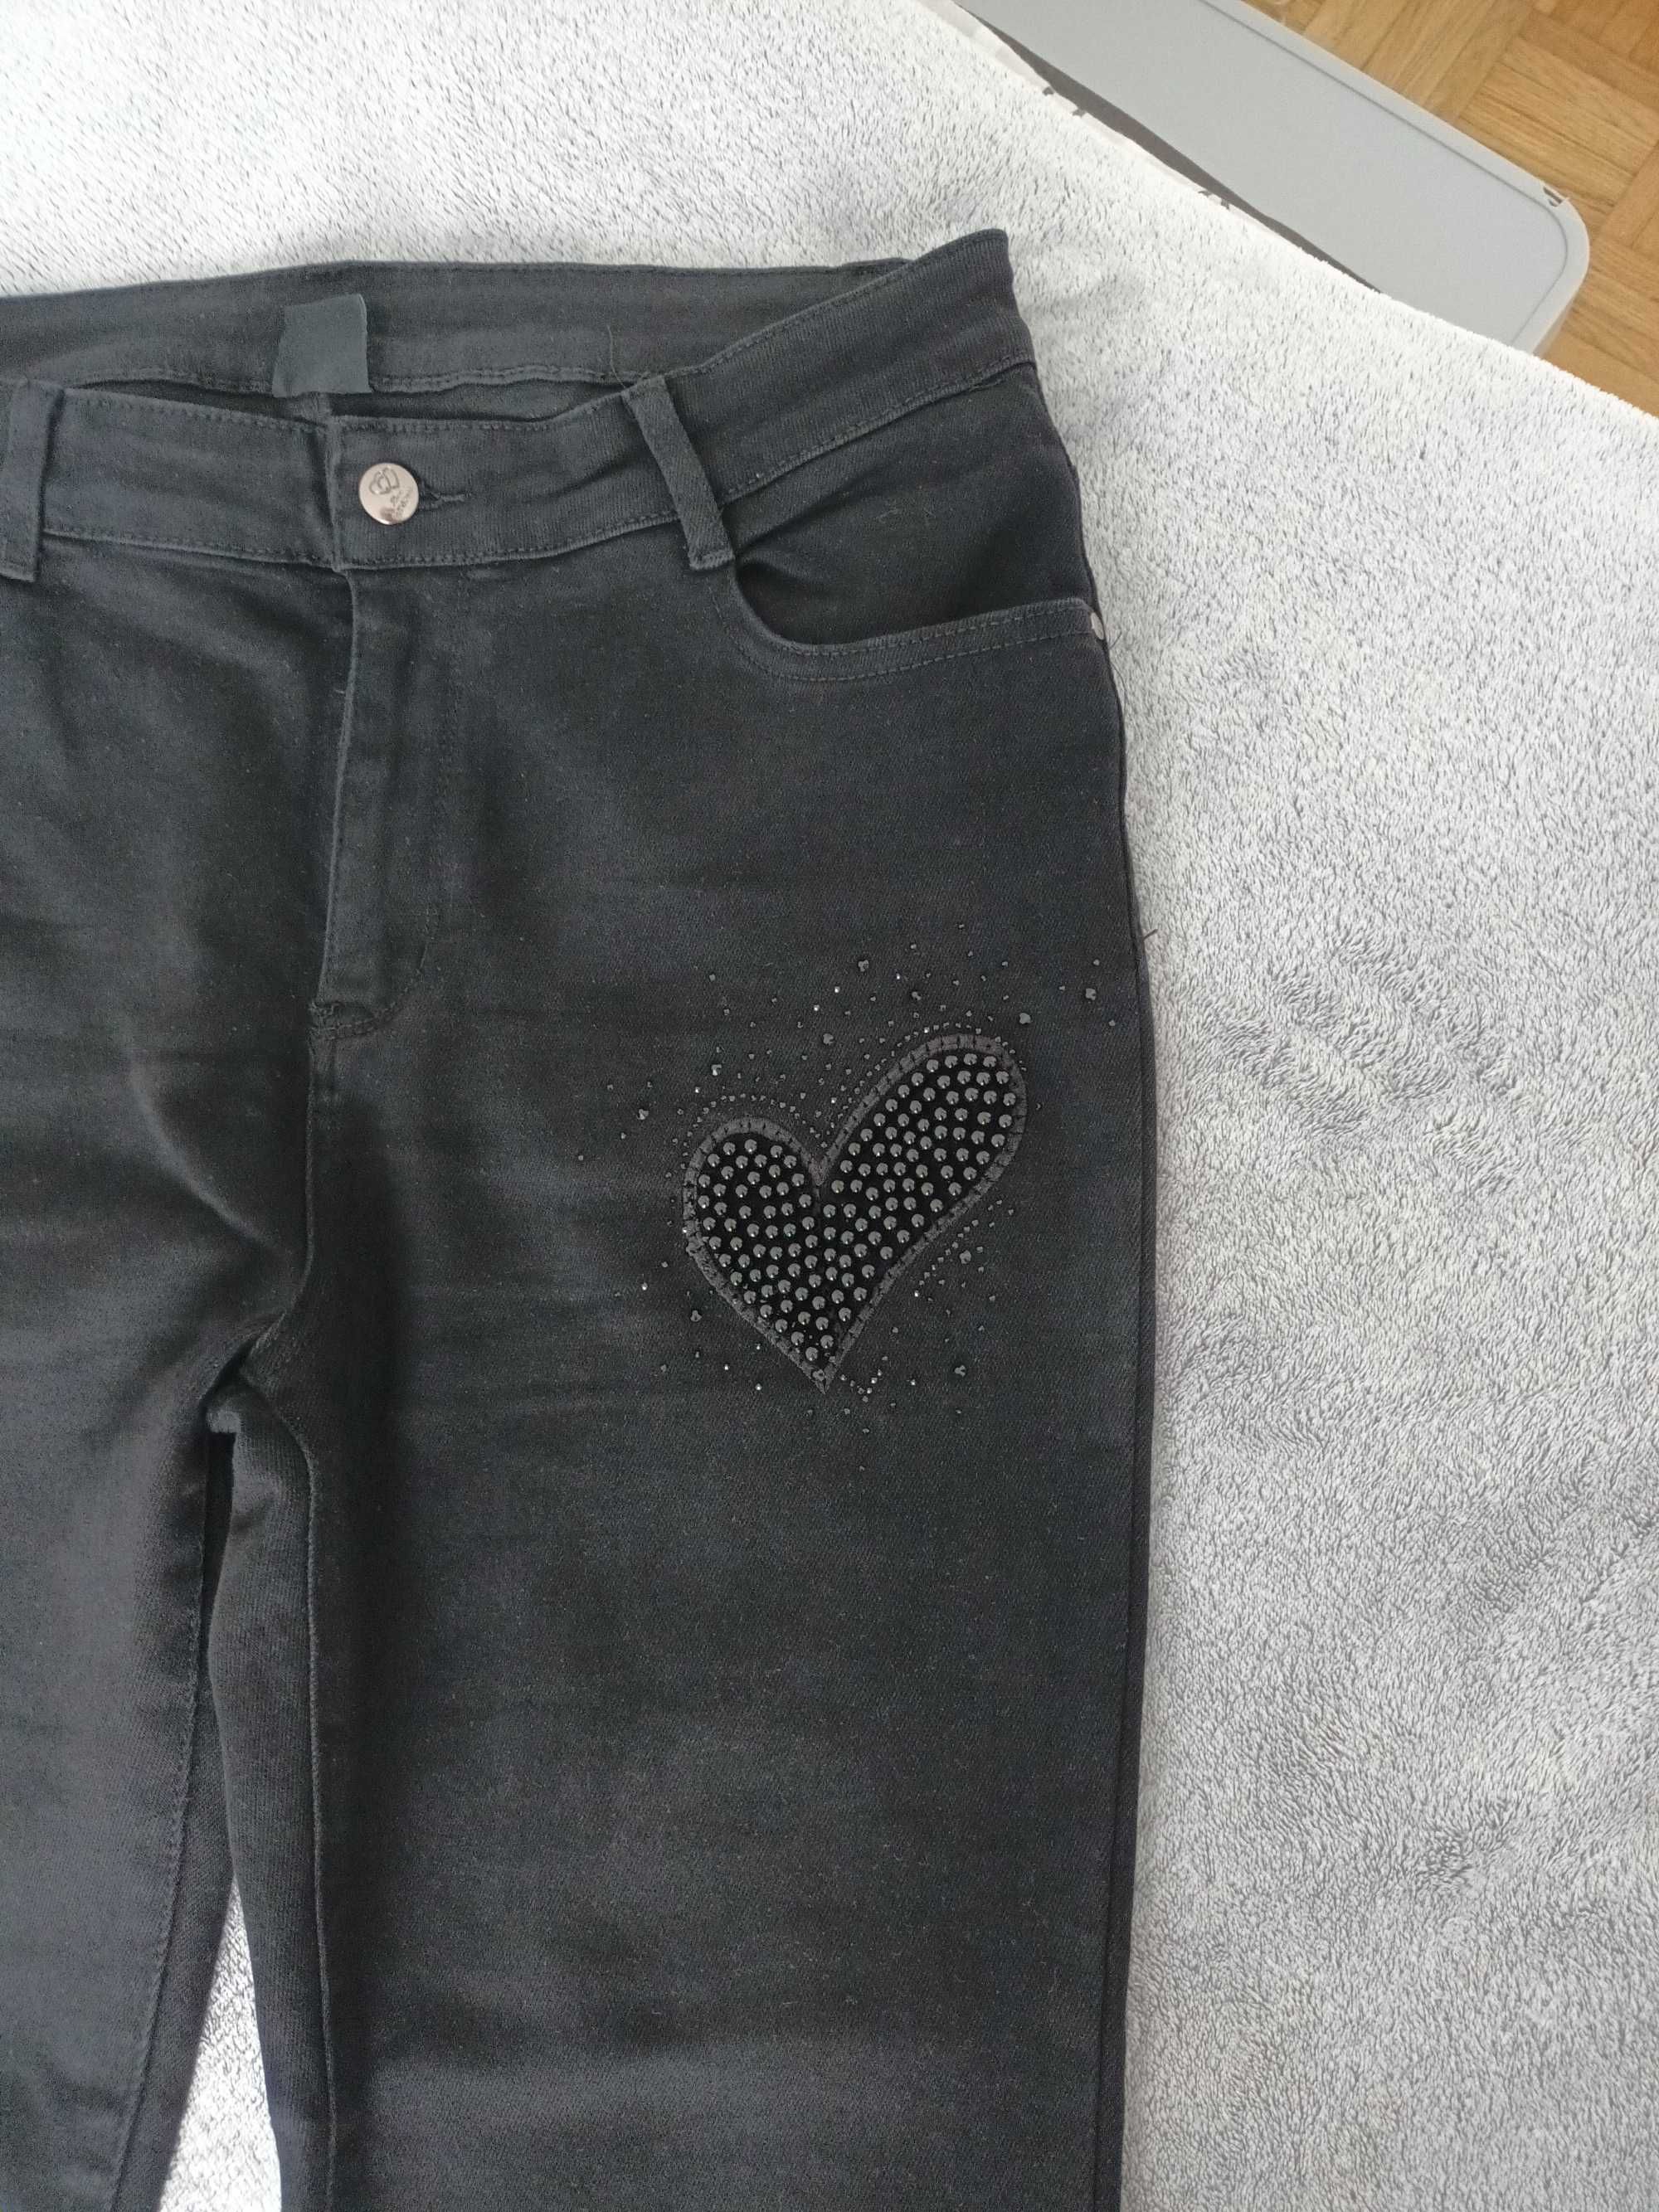 Spodnie czarne dżins